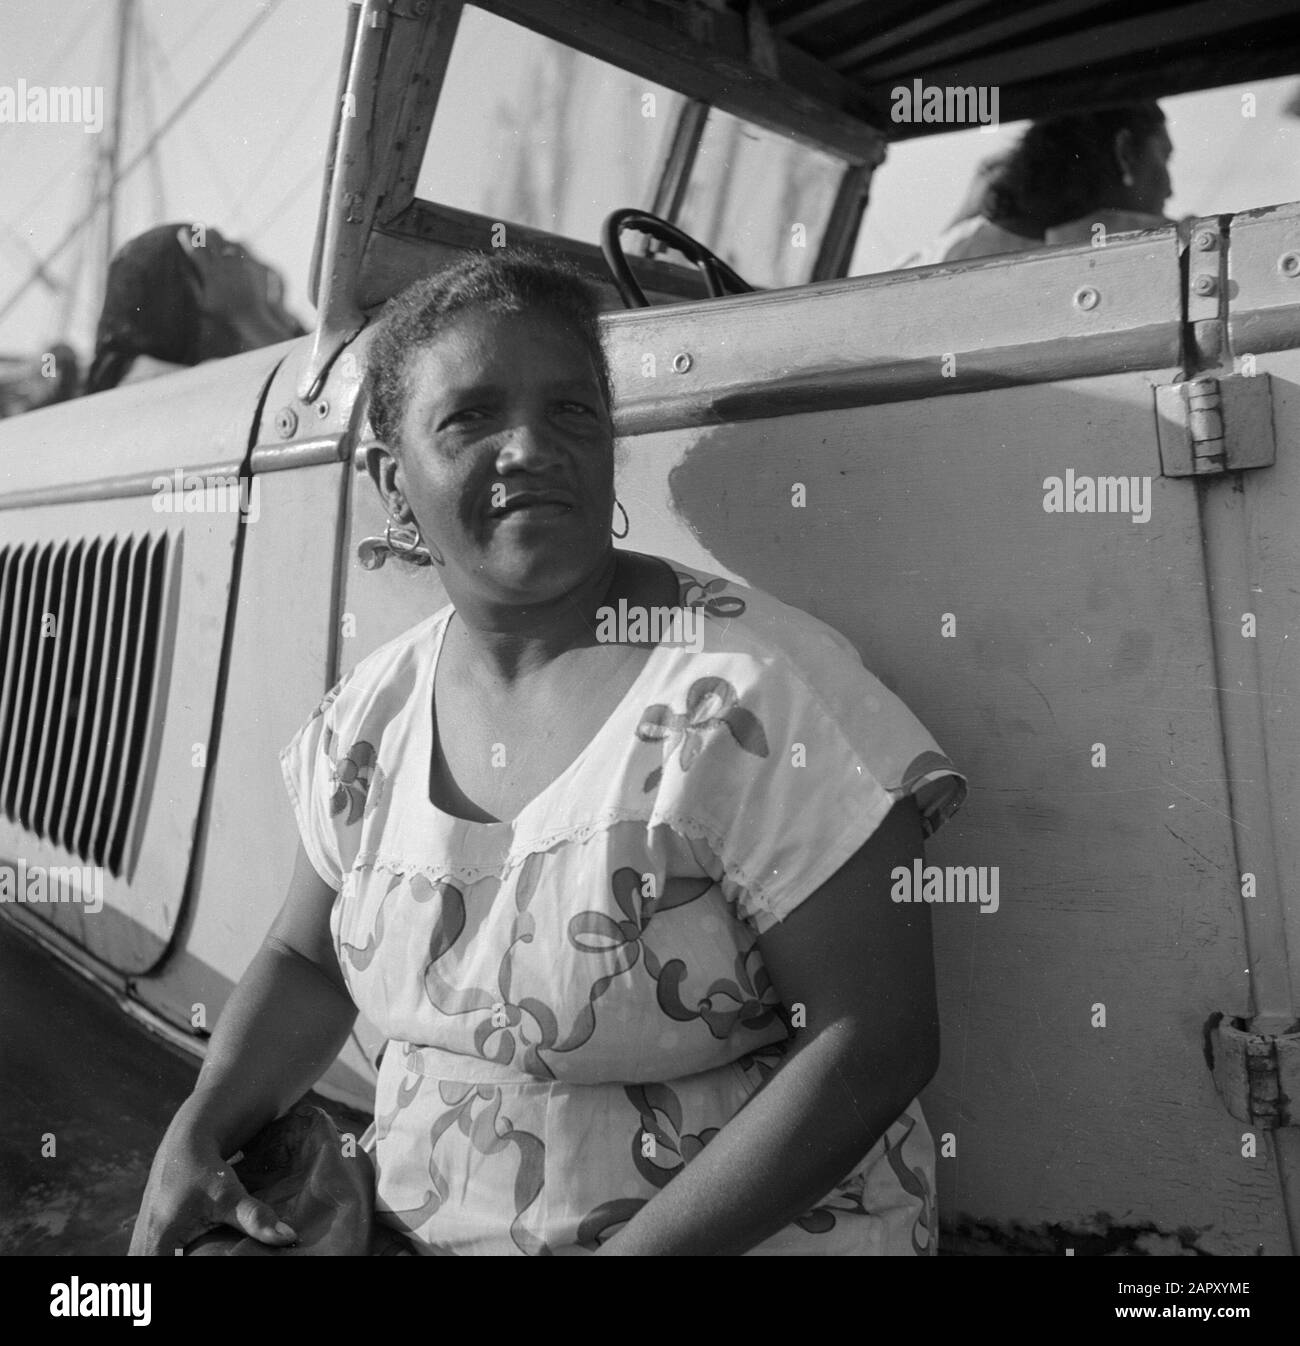 Viaggio in Suriname e Antille Olandesi Donna al mercato nel porto di Oranjestad su Aruba Data: 1947 Località: Aruba, Oranjestad Parole Chiave: Porti, popolazione indigena, mercati, donne Foto Stock